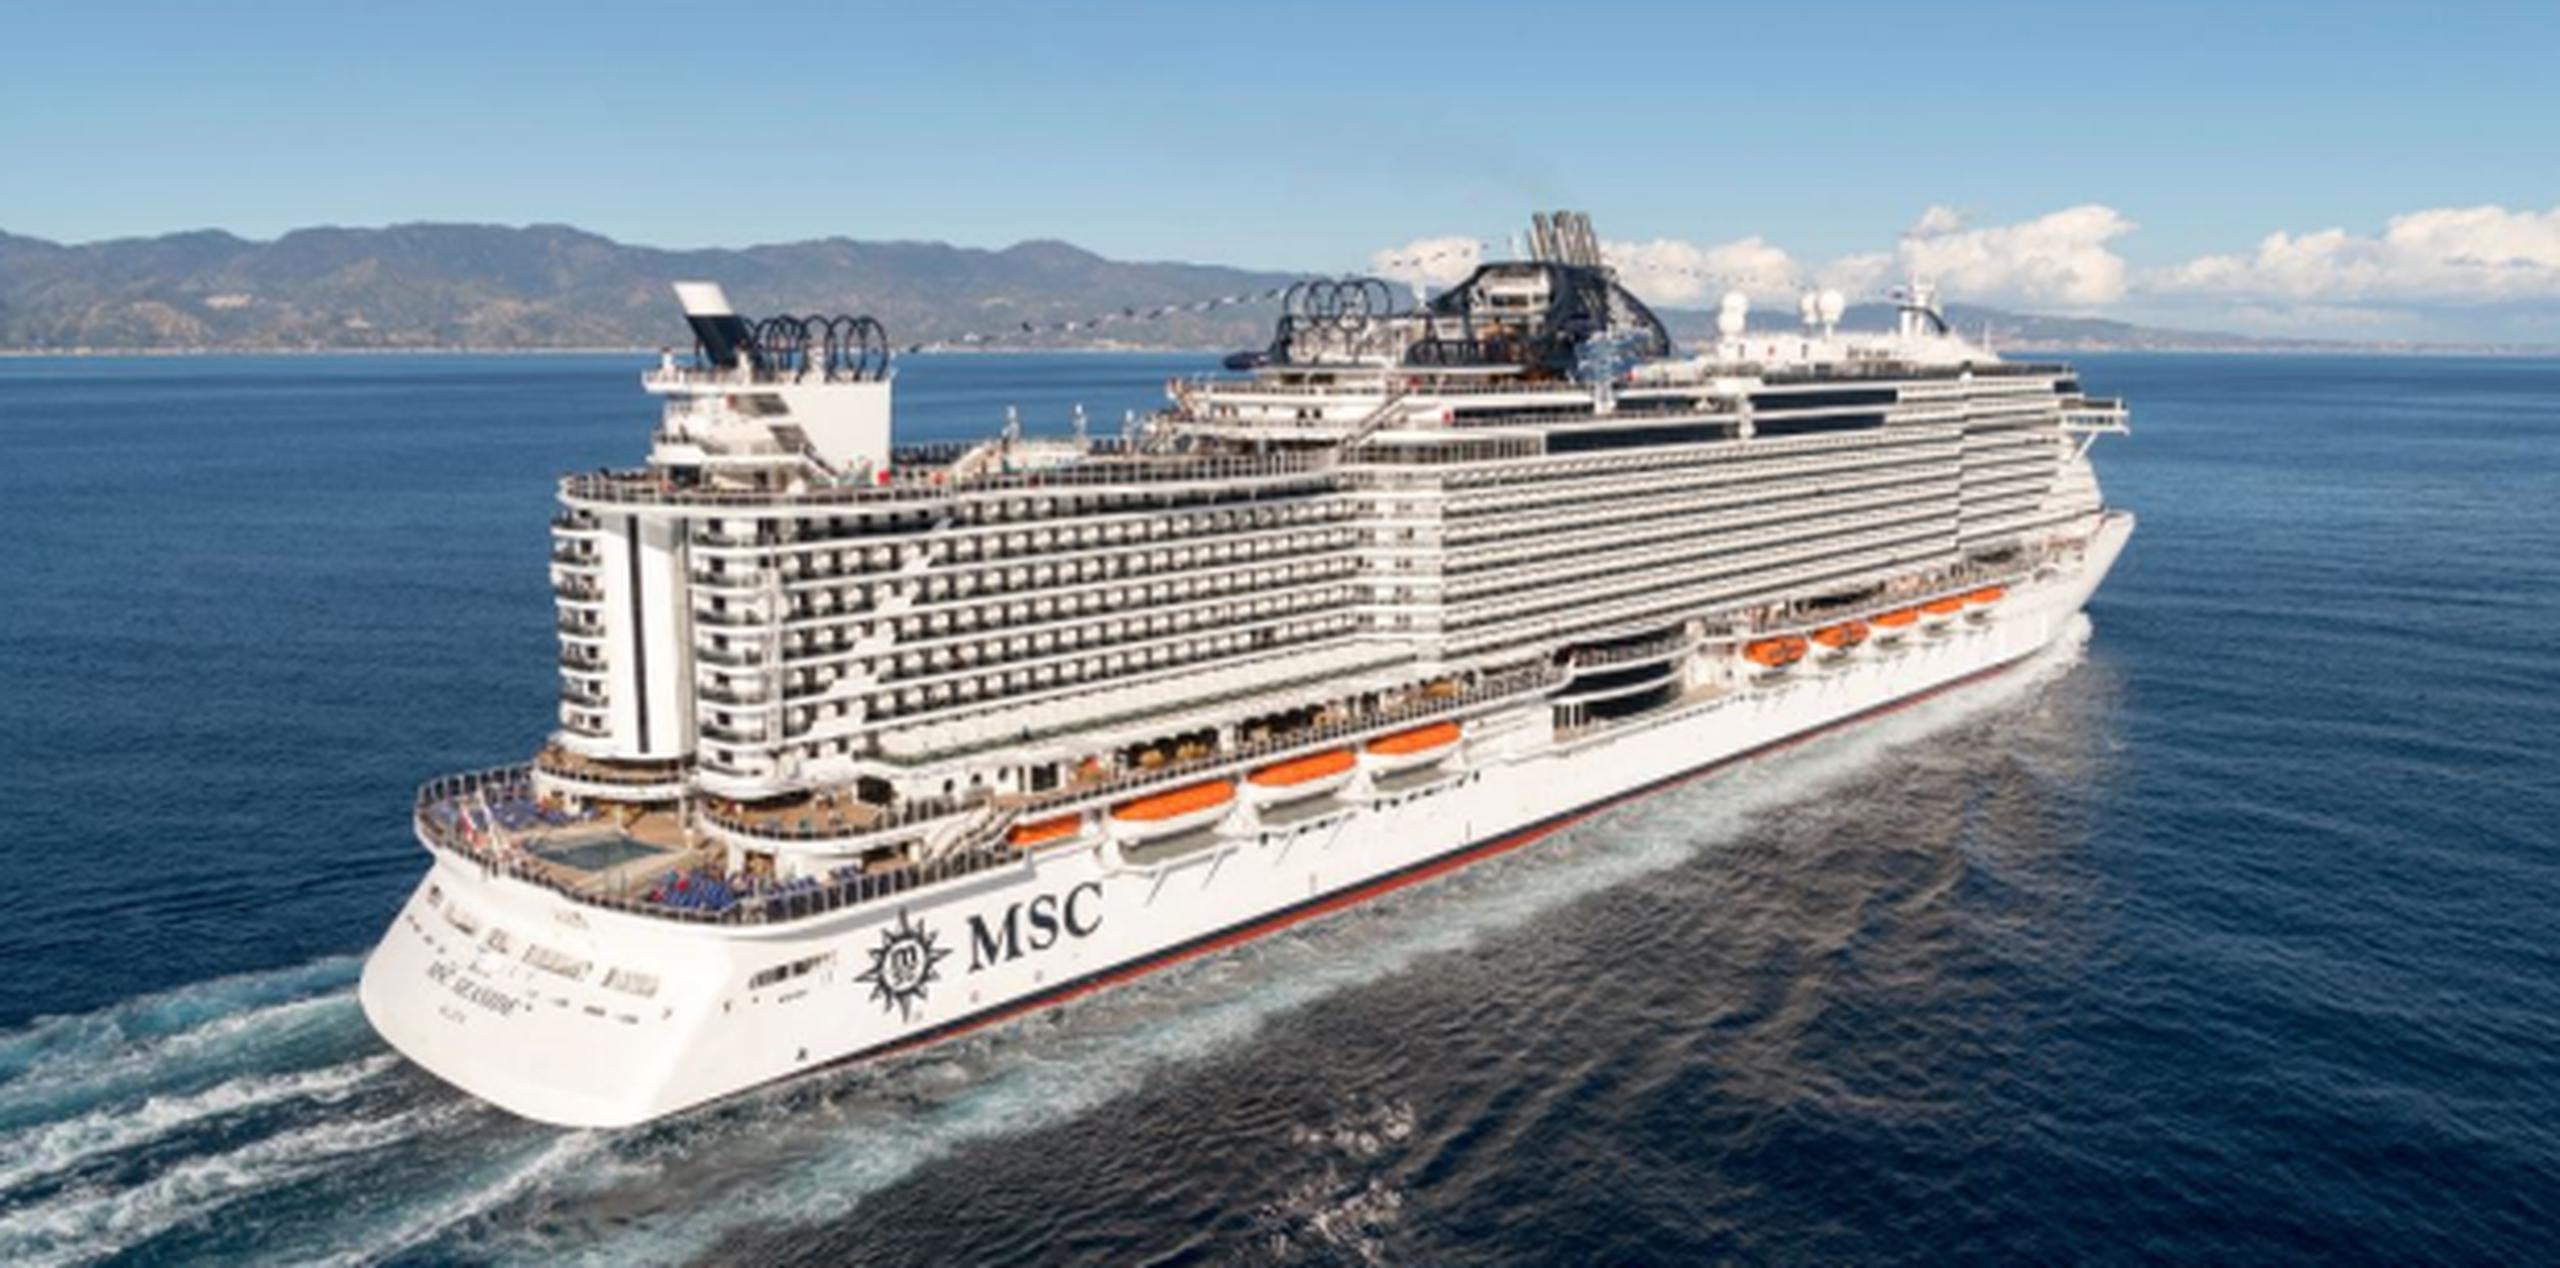 Según el director de Turismo es el "barco crucero más nuevo y moderno en el mundo". (AP)